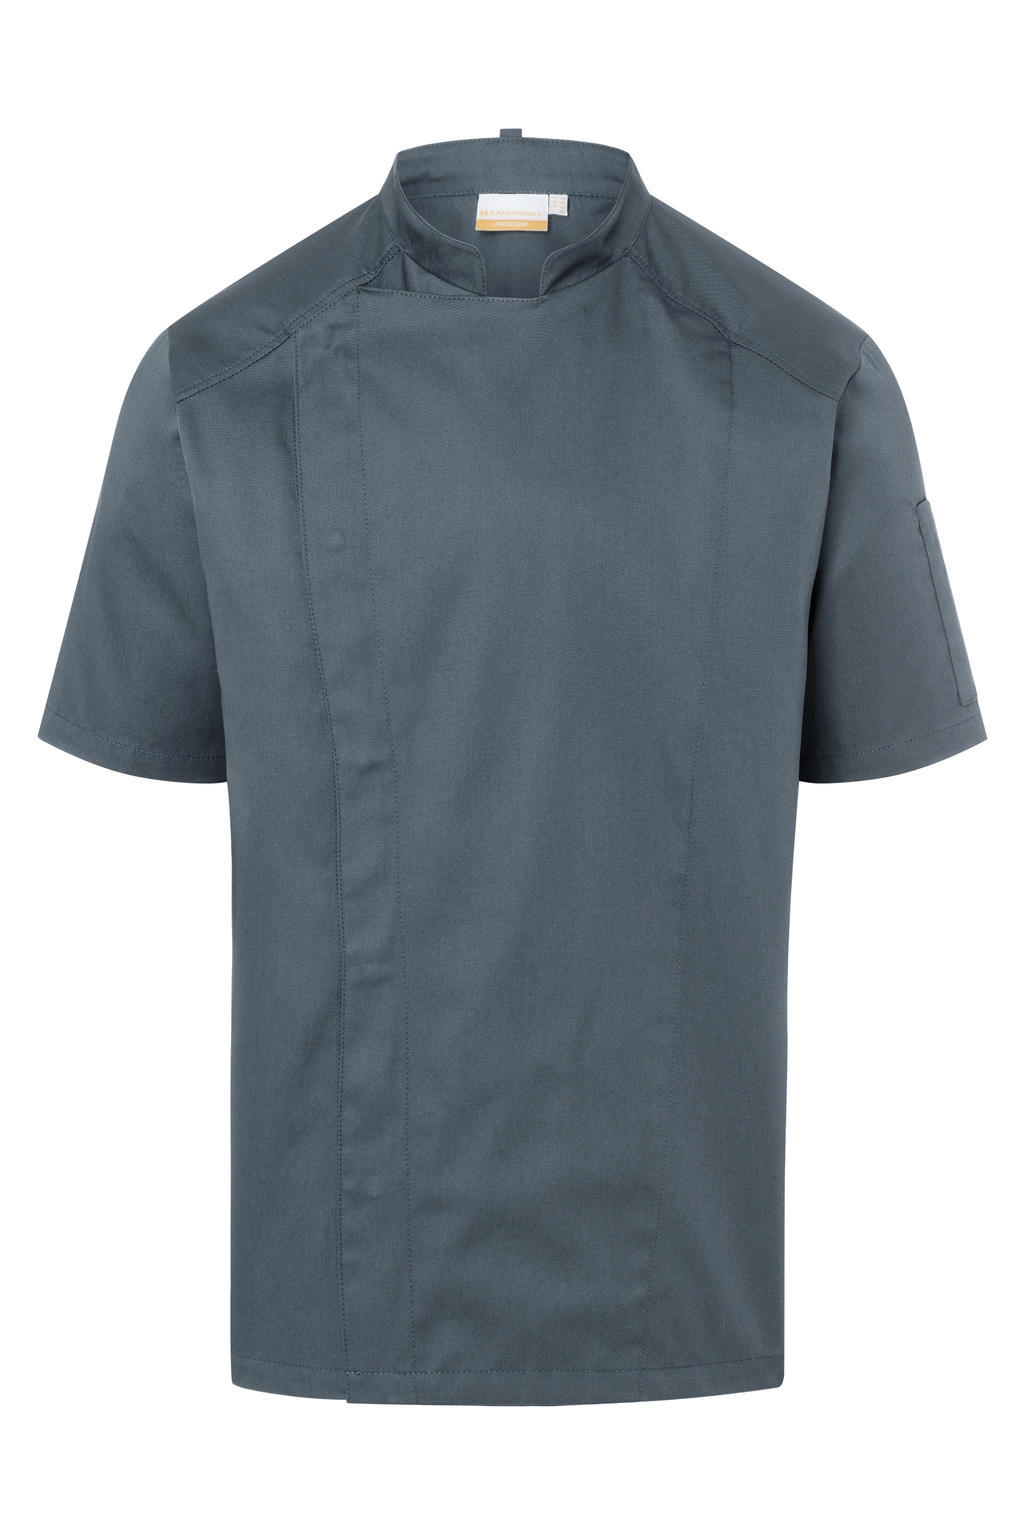 Short-Sleeve Chef Jacket Modern-Look zum Besticken und Bedrucken in der Farbe Anthracite mit Ihren Logo, Schriftzug oder Motiv.